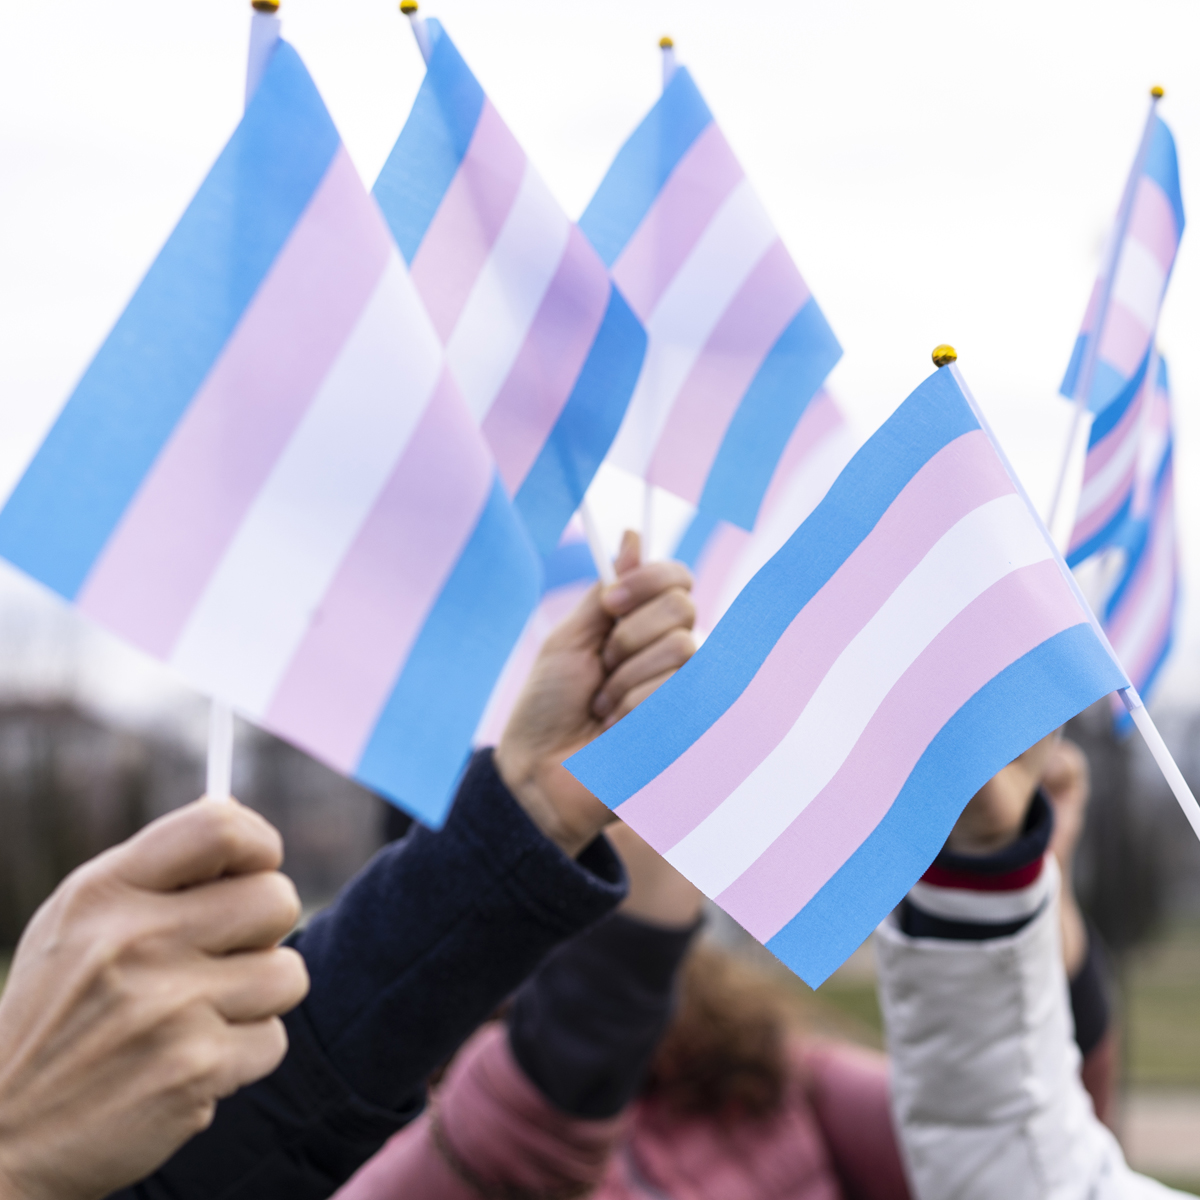 Déclaration conjointe – La visibilité trans passe d’abord par la défense de leurs droits fondamentaux 